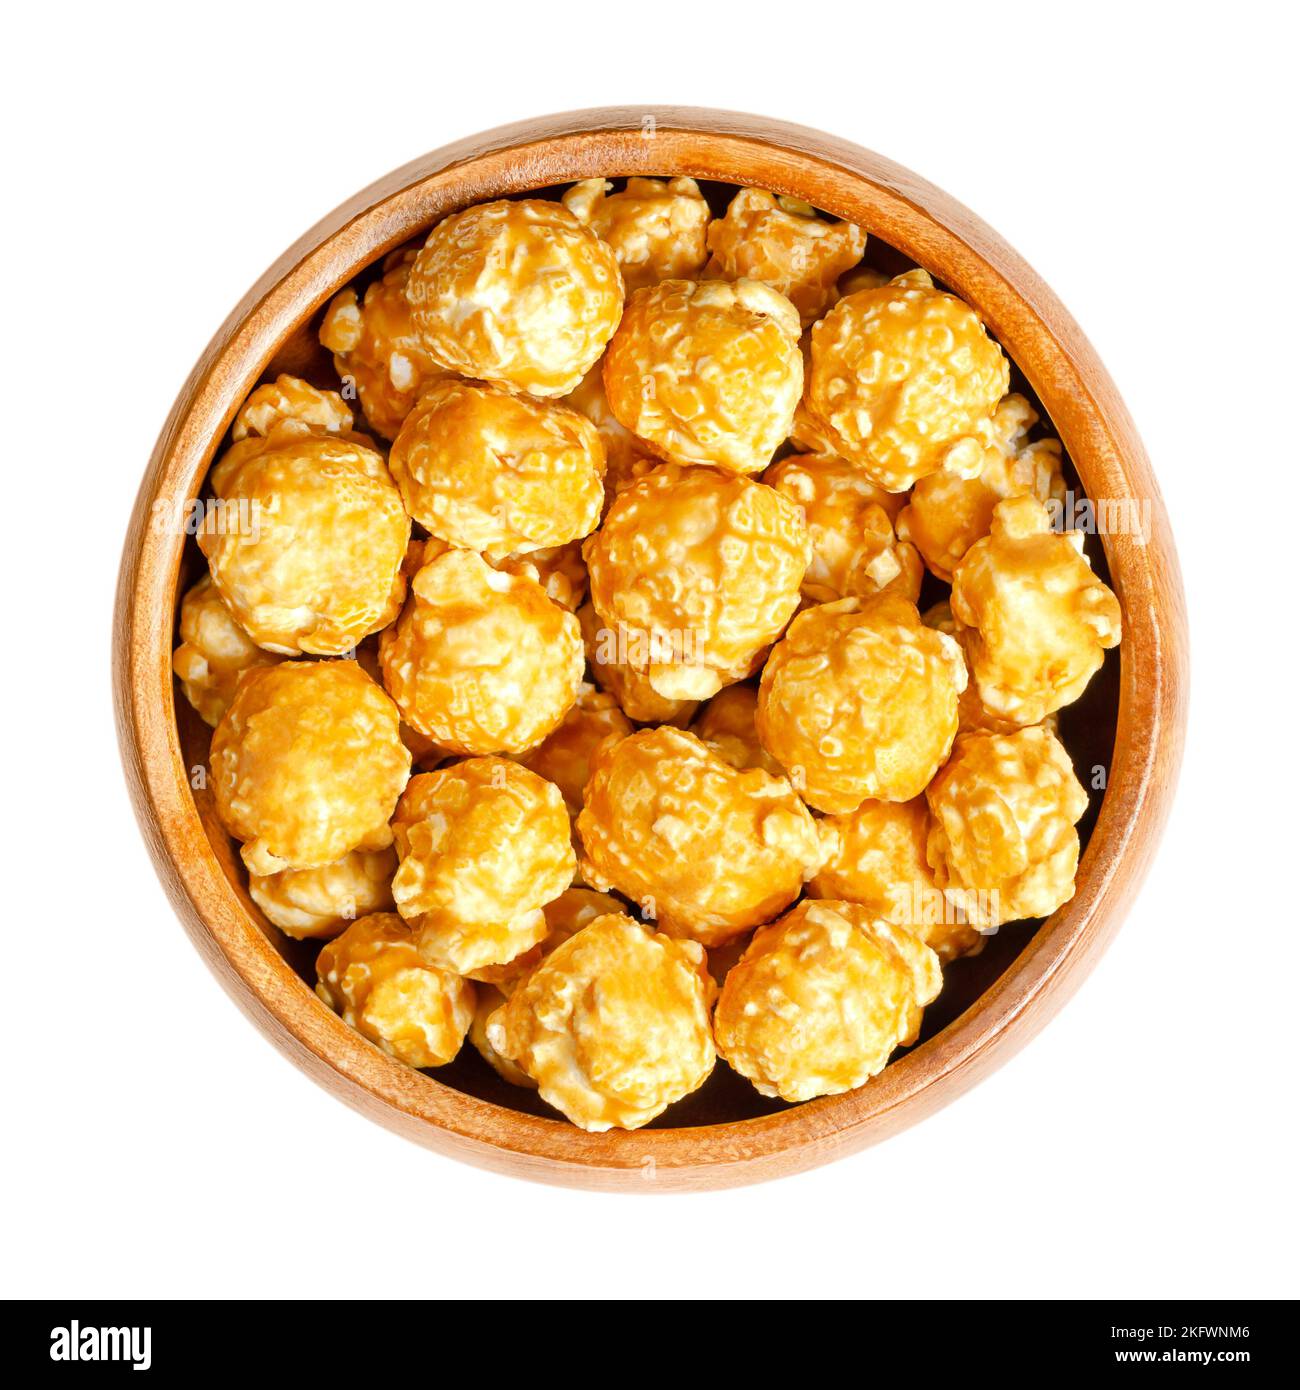 Karamell-Popcorn, Karamell-Mais, Toffee-Popcorn, in Holzschüssel. Konfektion aus Popcorn, mit Karamell-Süßigkeitenschale auf Zucker- oder Melasse-Basis. Stockfoto